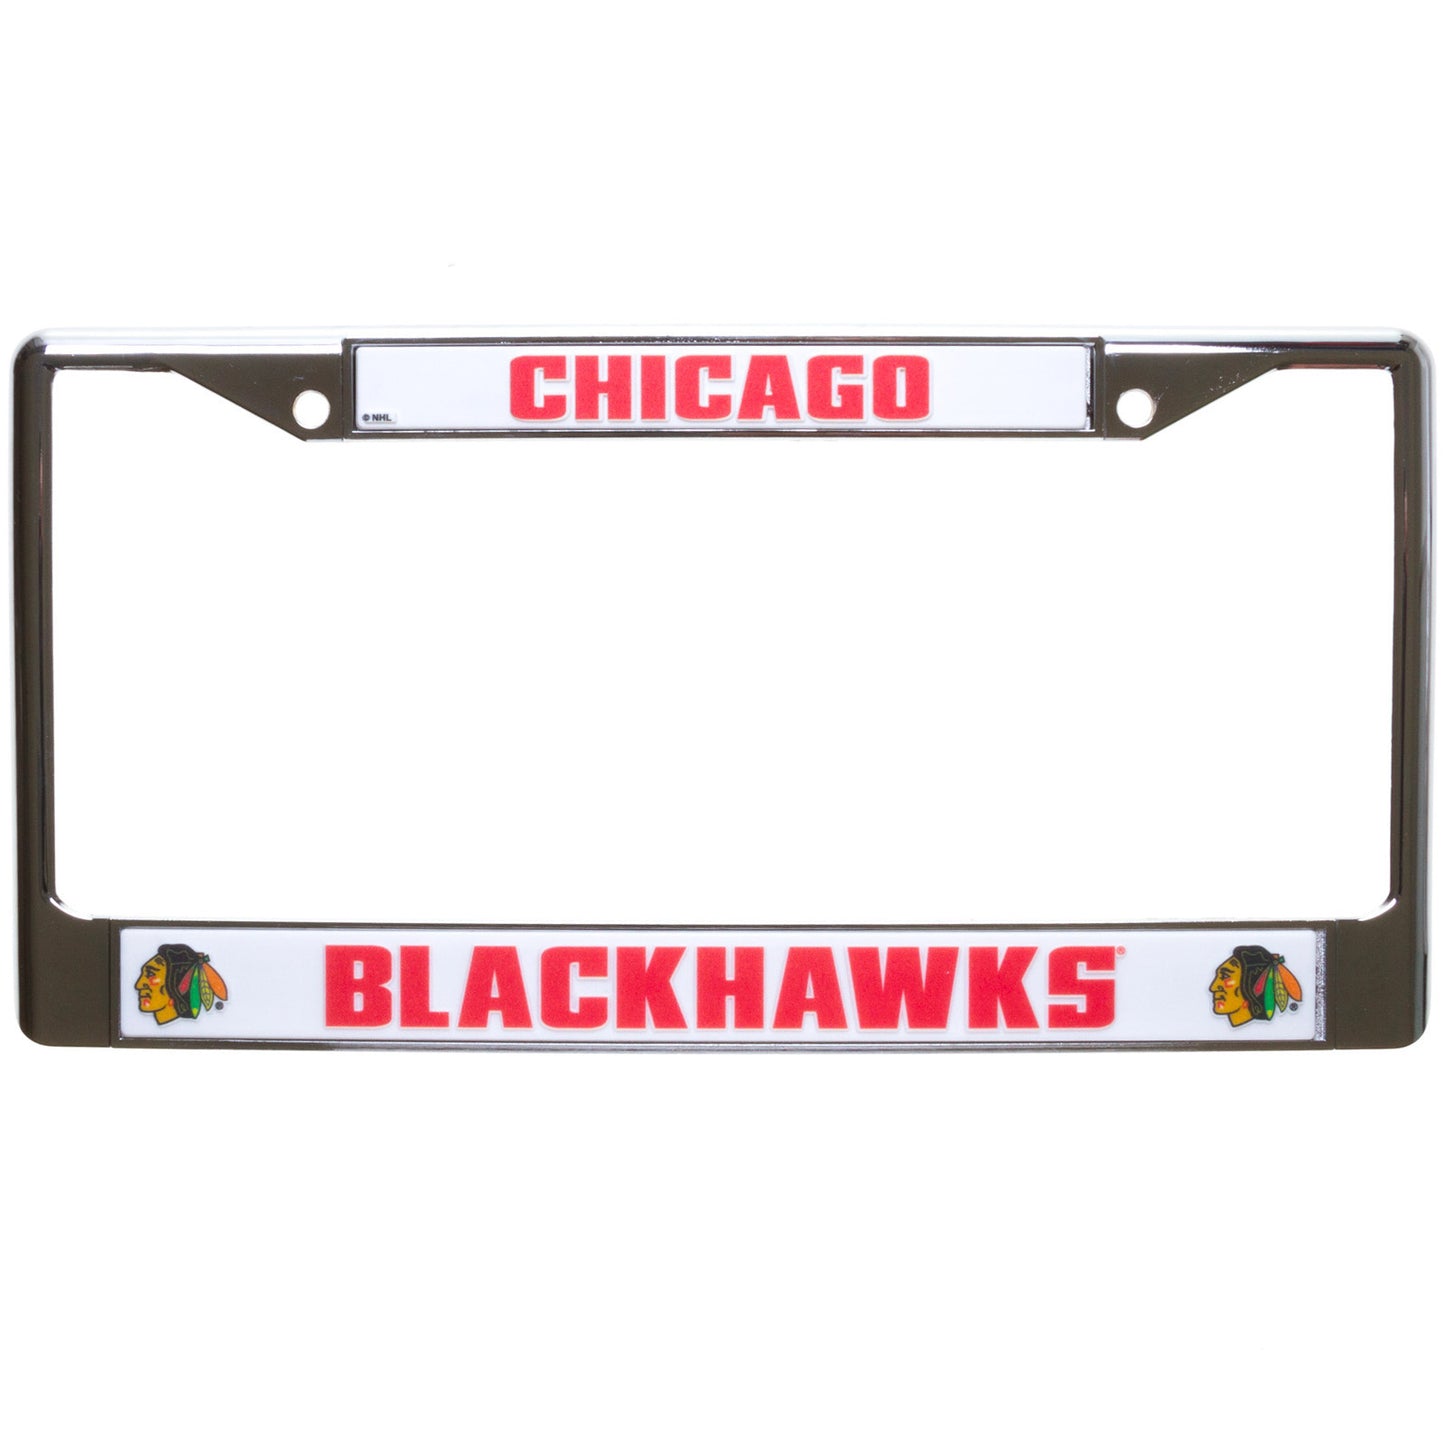 Chicago Blackhawks White and Chrome License Plate Frame